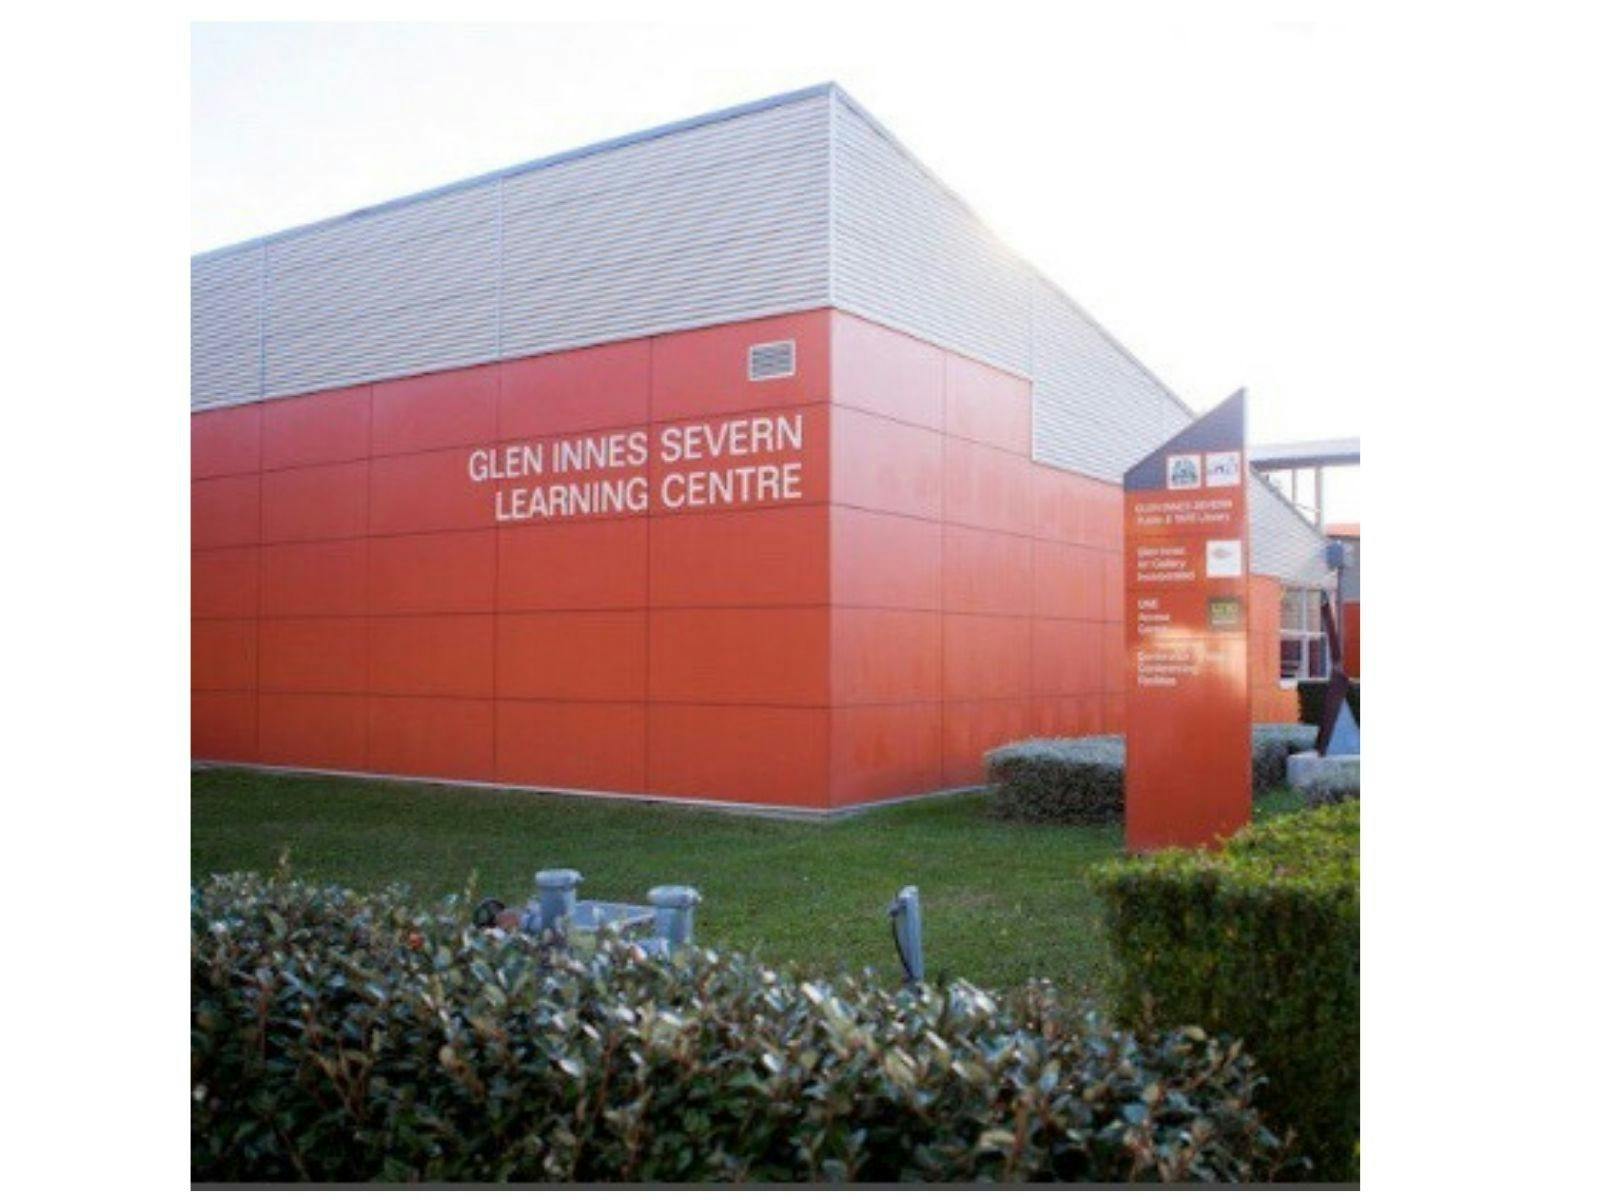 Glenn Innes Severn Learning Centre